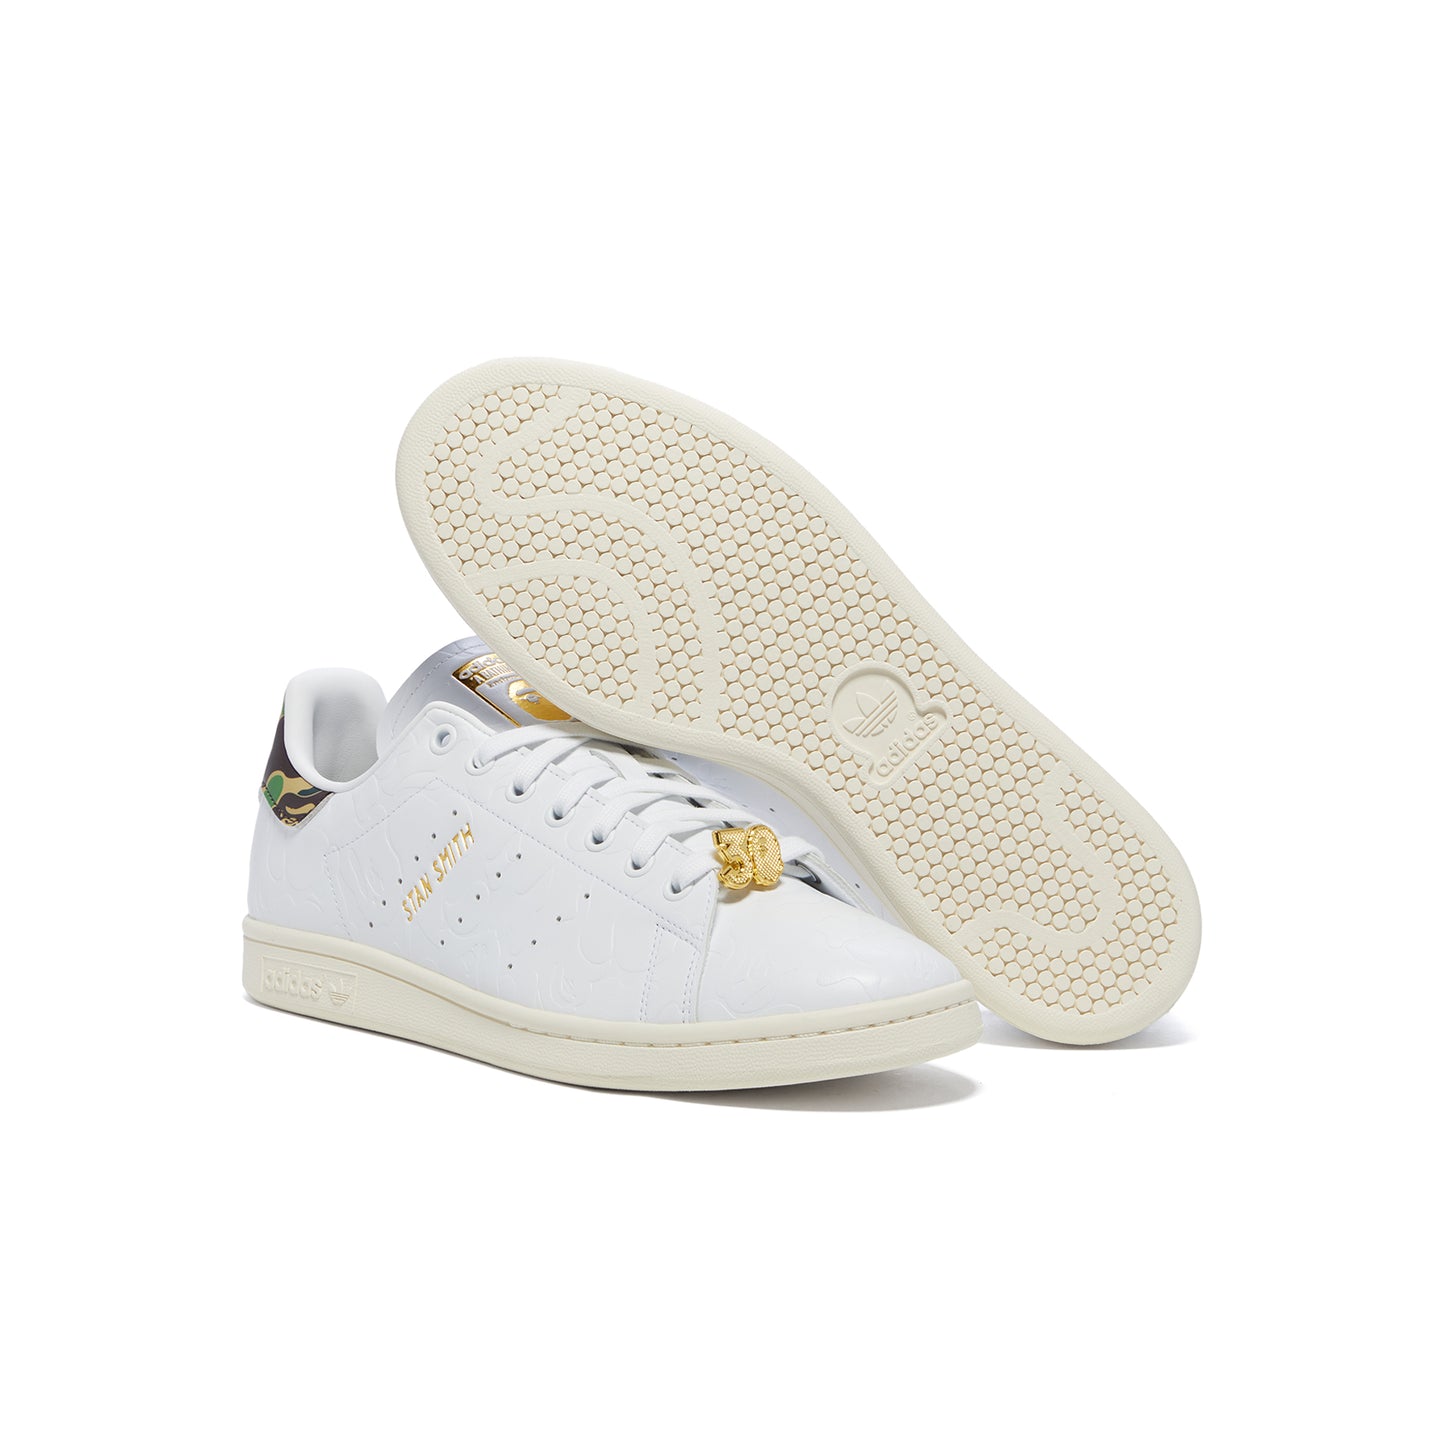 Adidas x BAPE Stan Smith (Feather White/Off White)